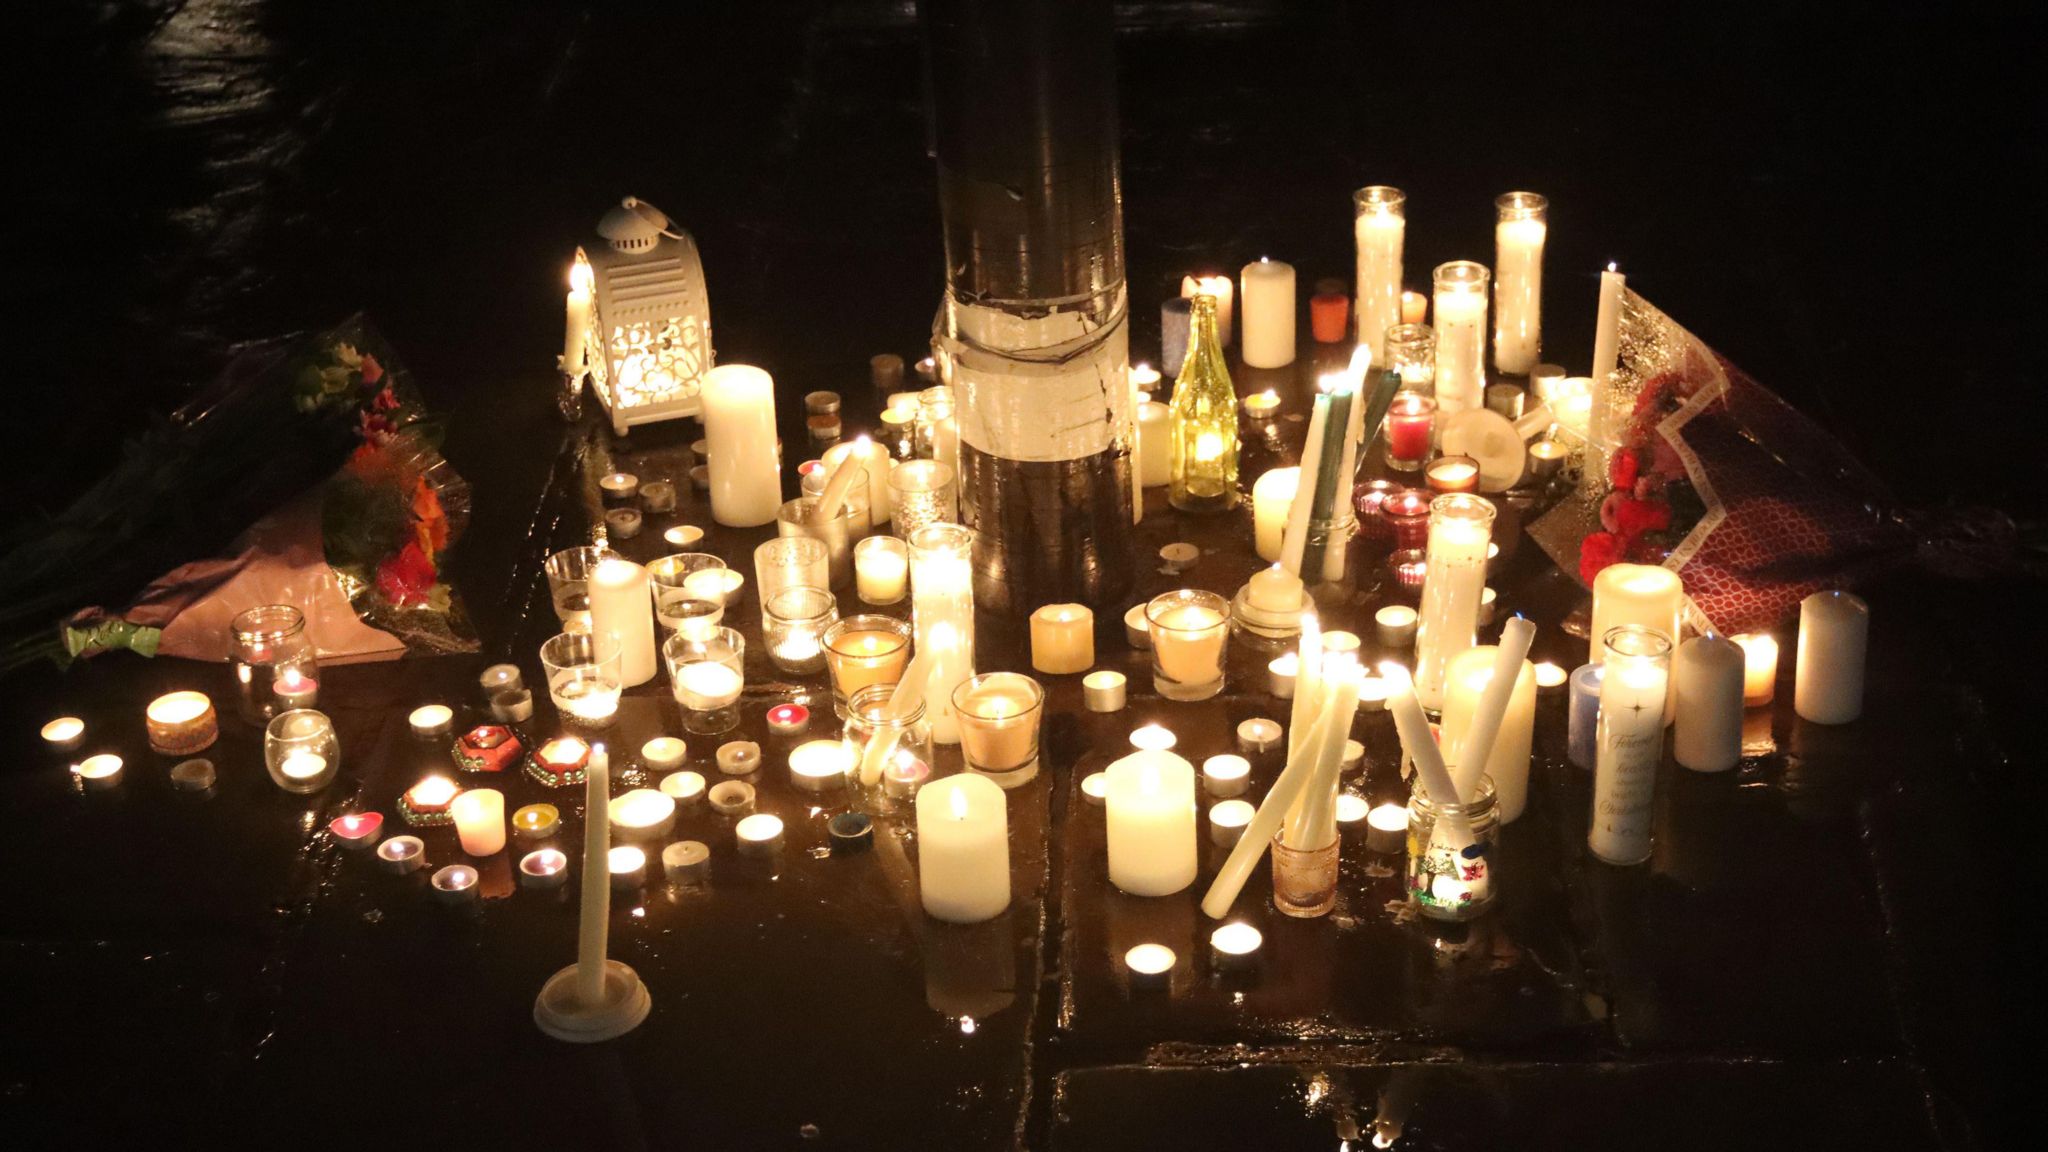 Candles at the vigil